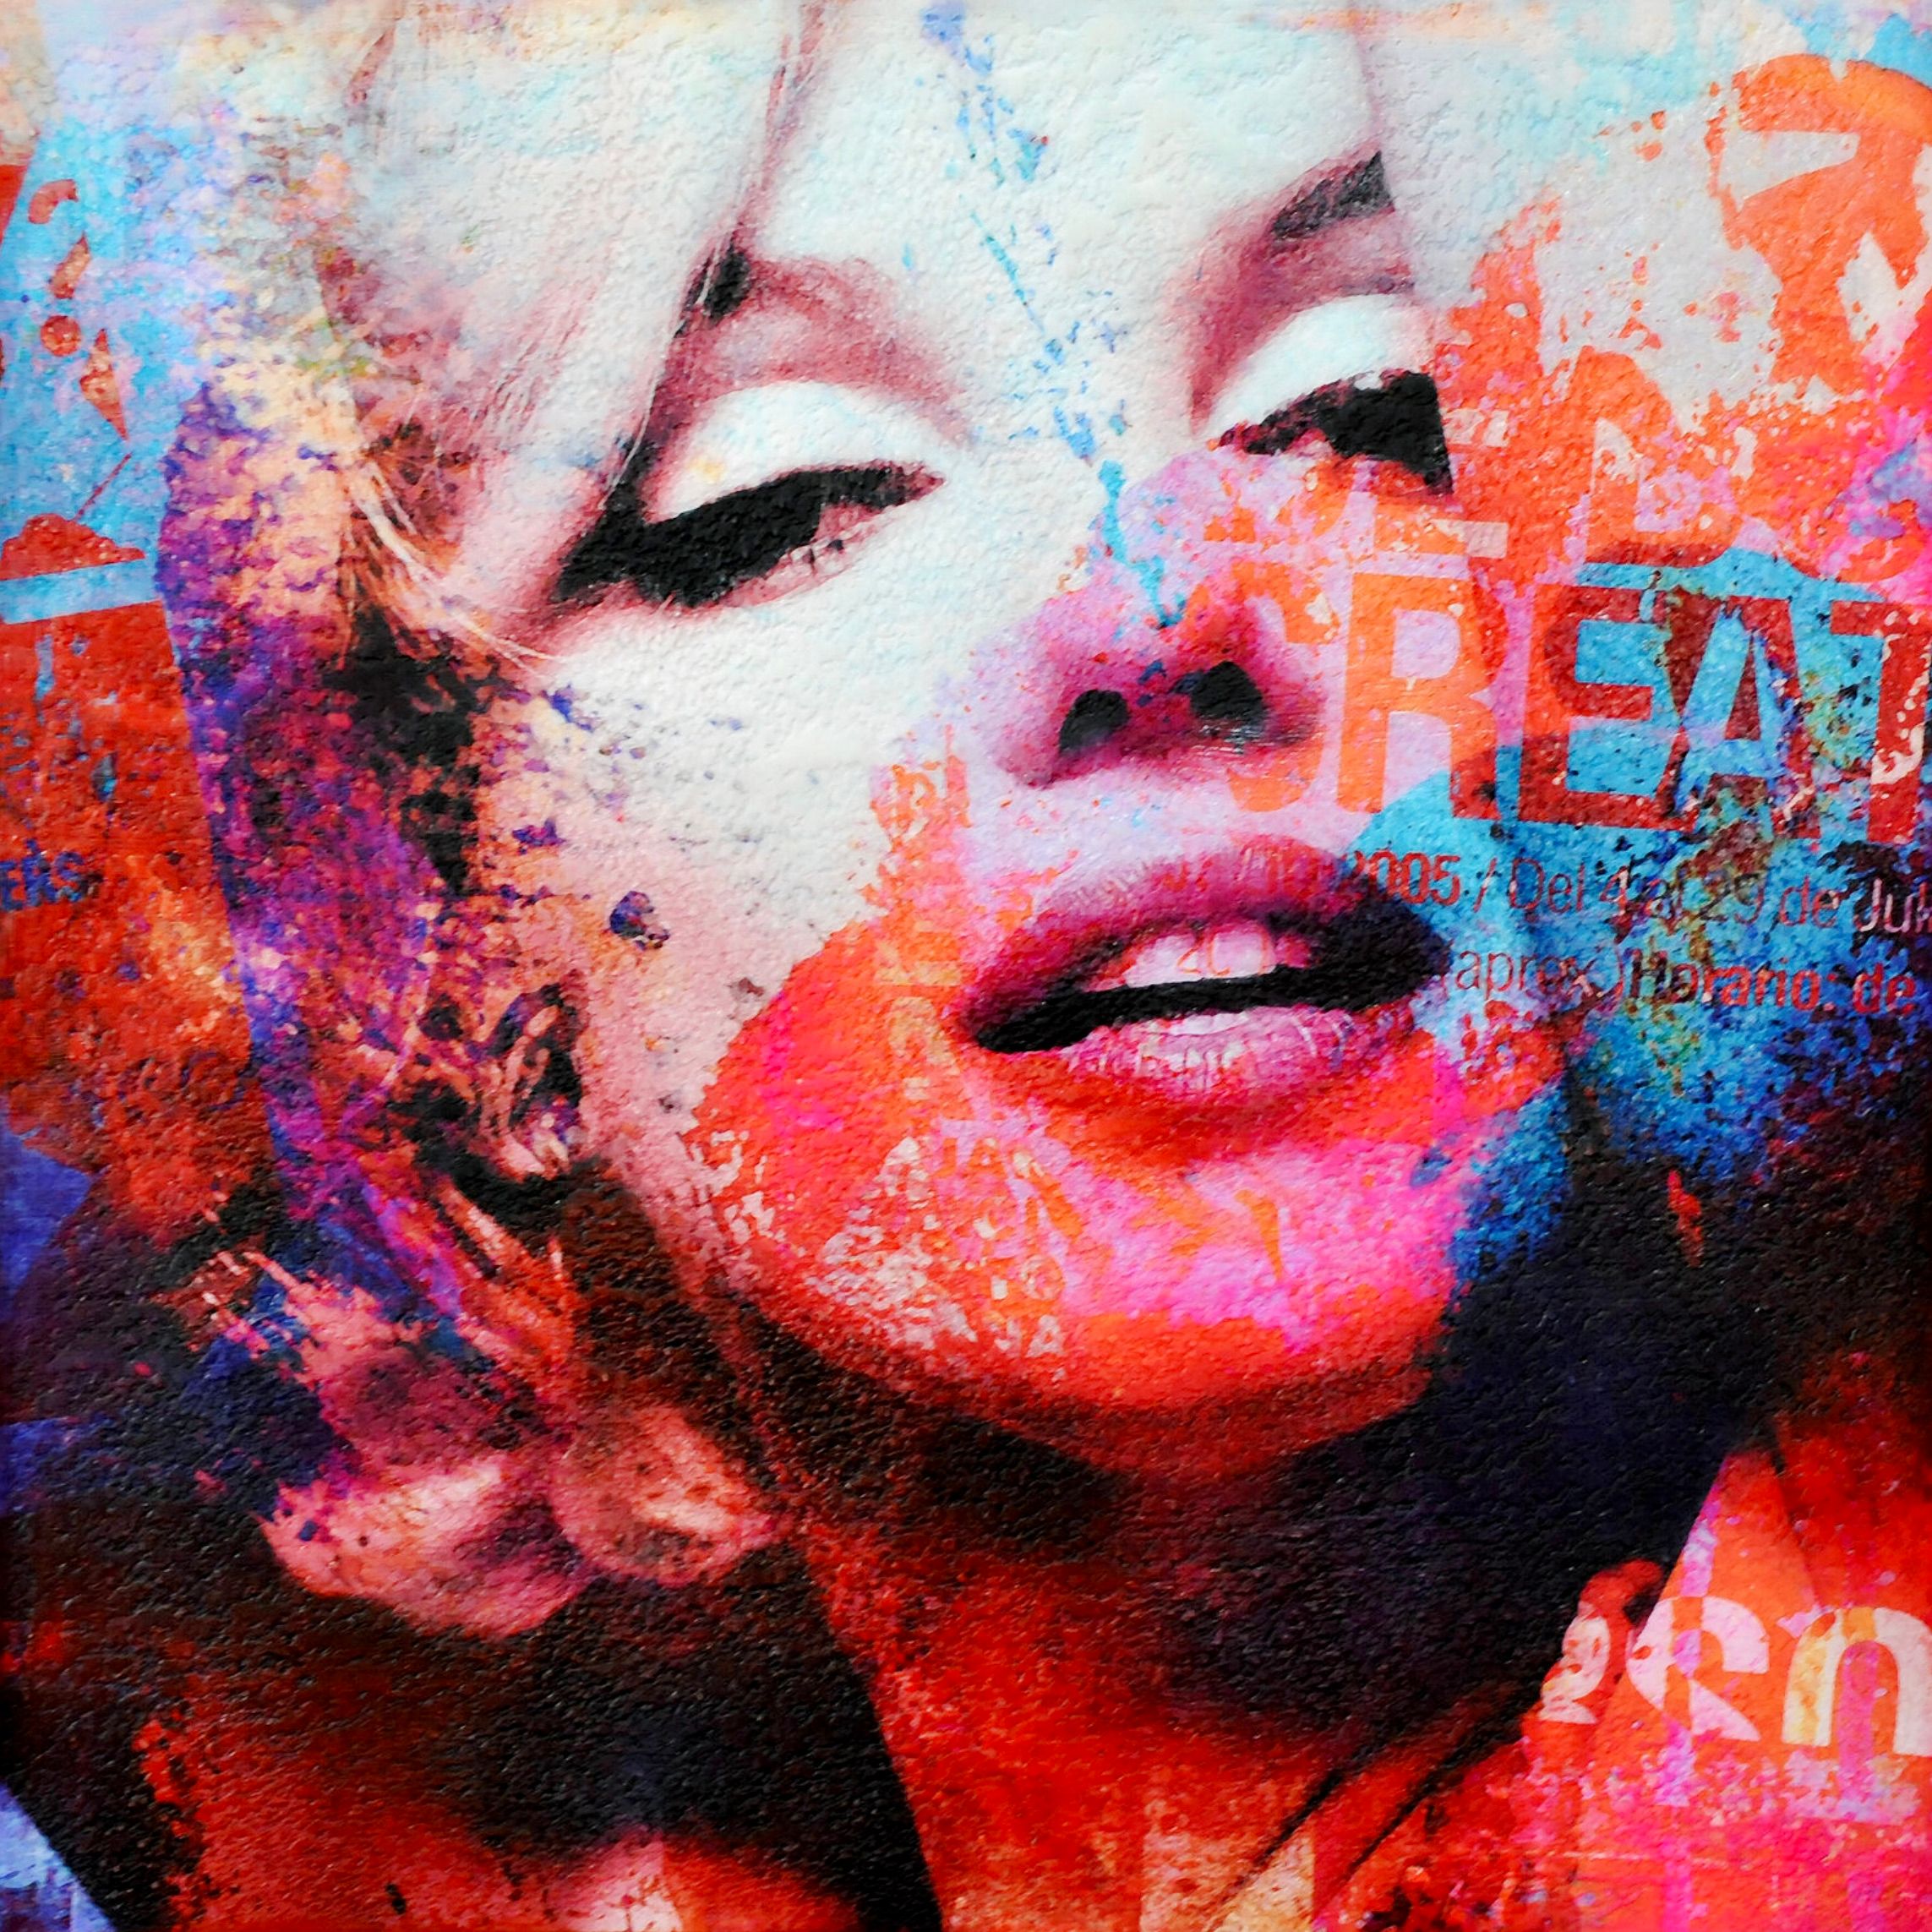 Le "Marilyn Monroe2" de Karin Vermeer est une combinaison numérique et un traitement de photographies, de peintures et de collages pour créer de nouvelles œuvres d'art originales en couleur.